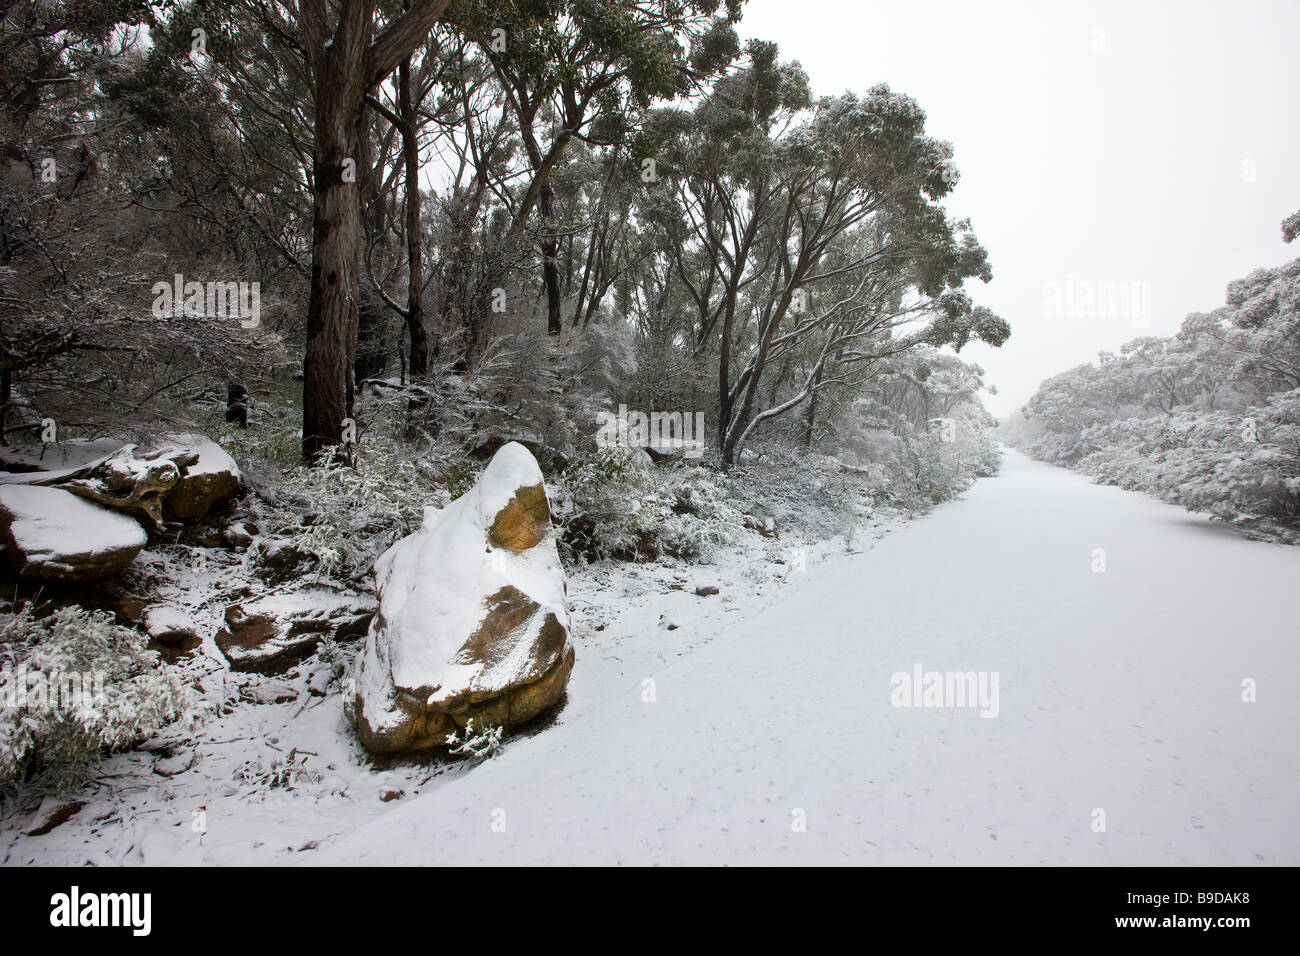 Snow, mount William, Grampians, Victoria, Australia Stock Photo